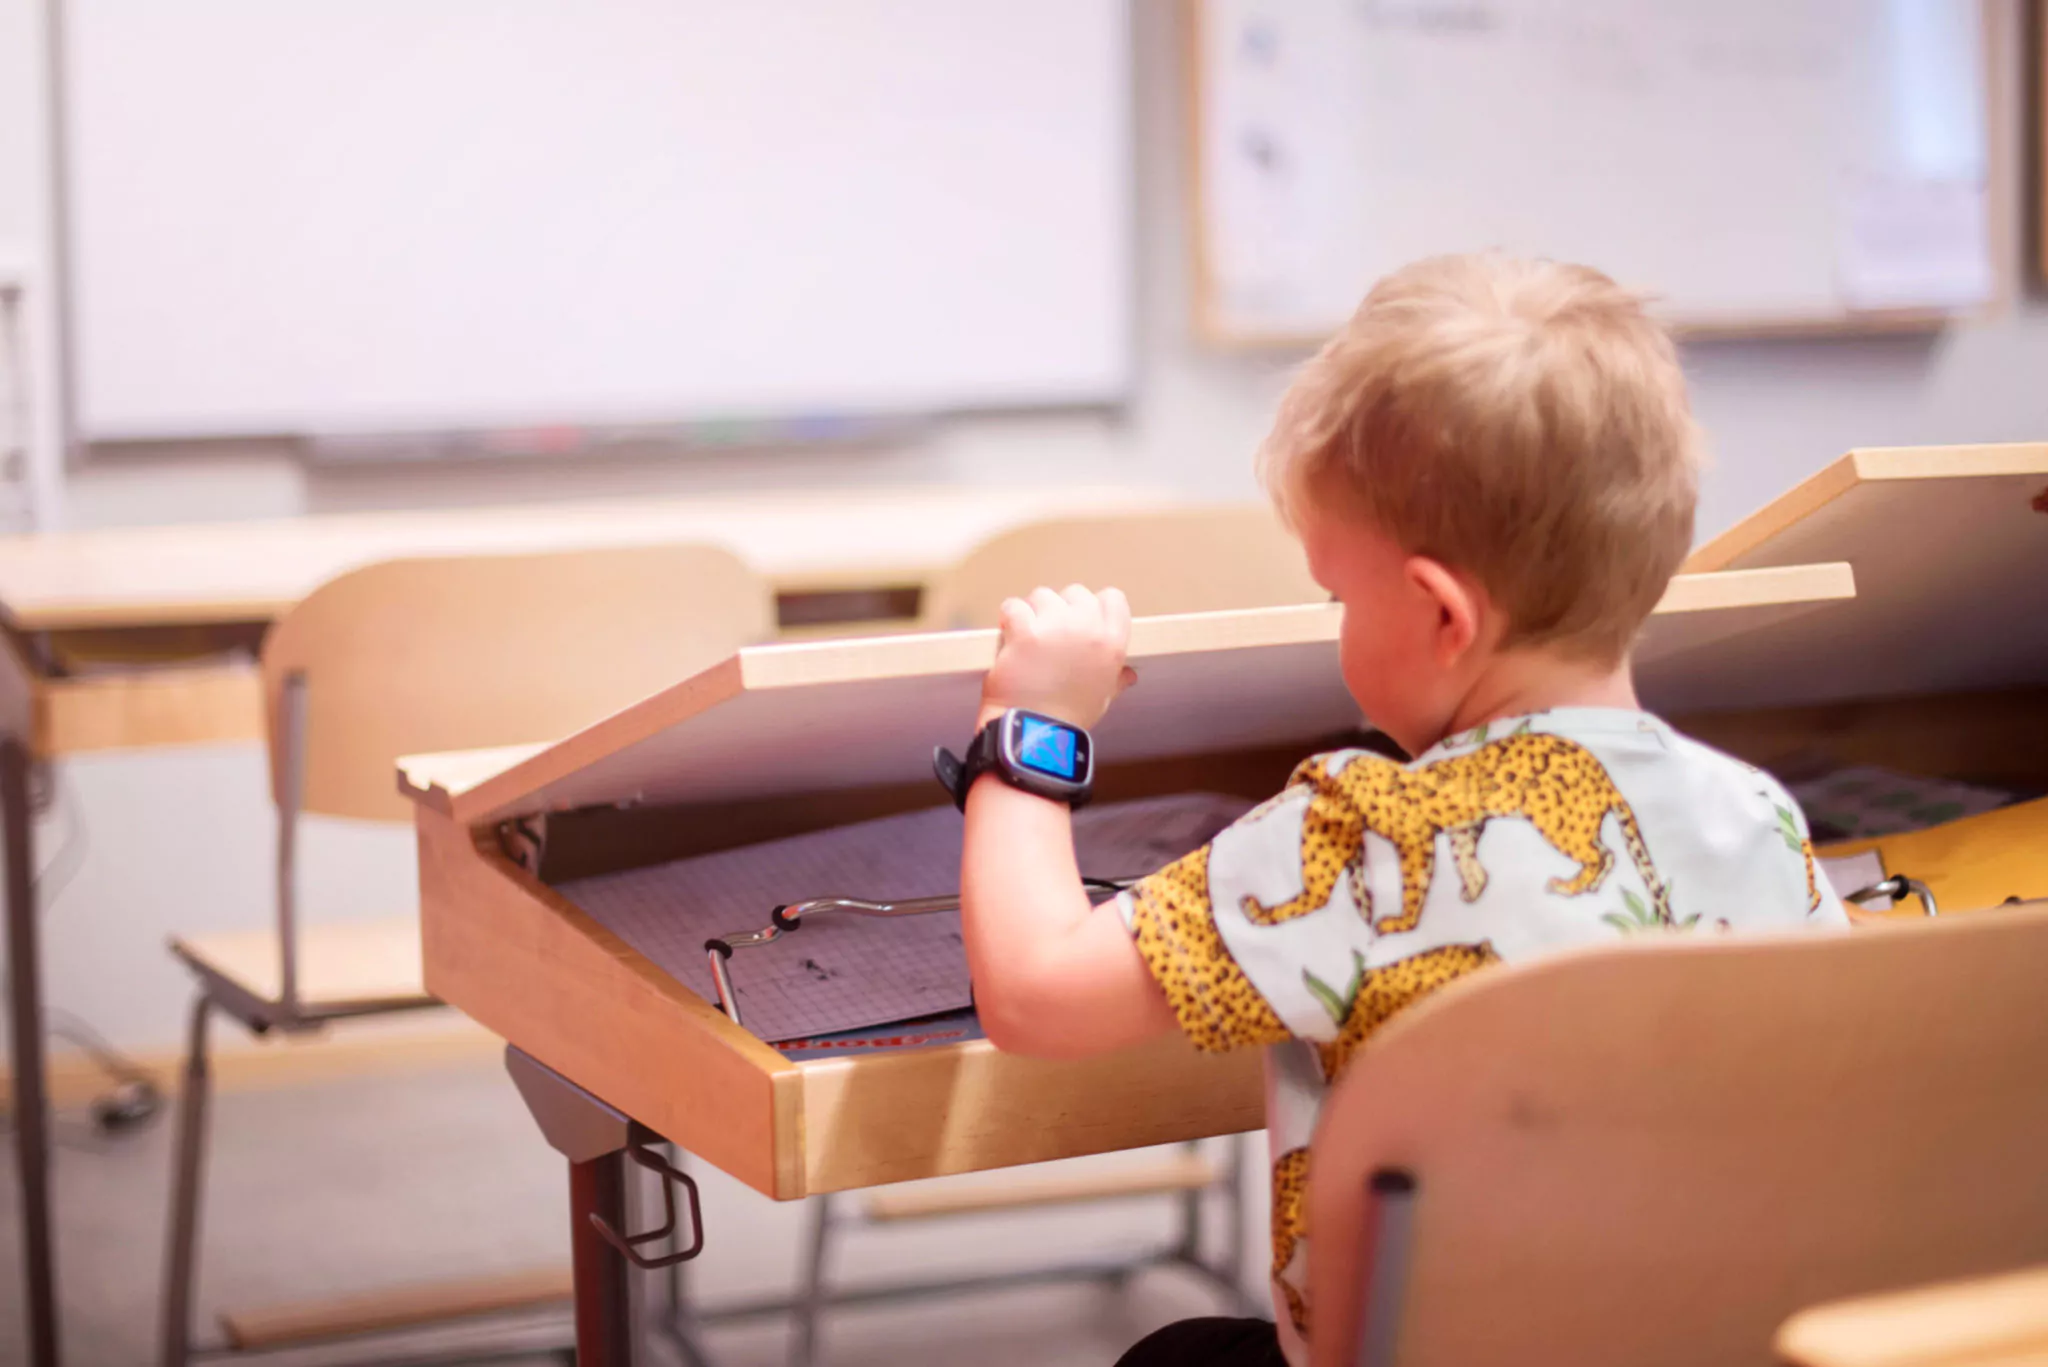 en pojke sitter i skolan vid sin skolbänk md en blå xplora klocka på vänster arm. Klockan är i skolläge